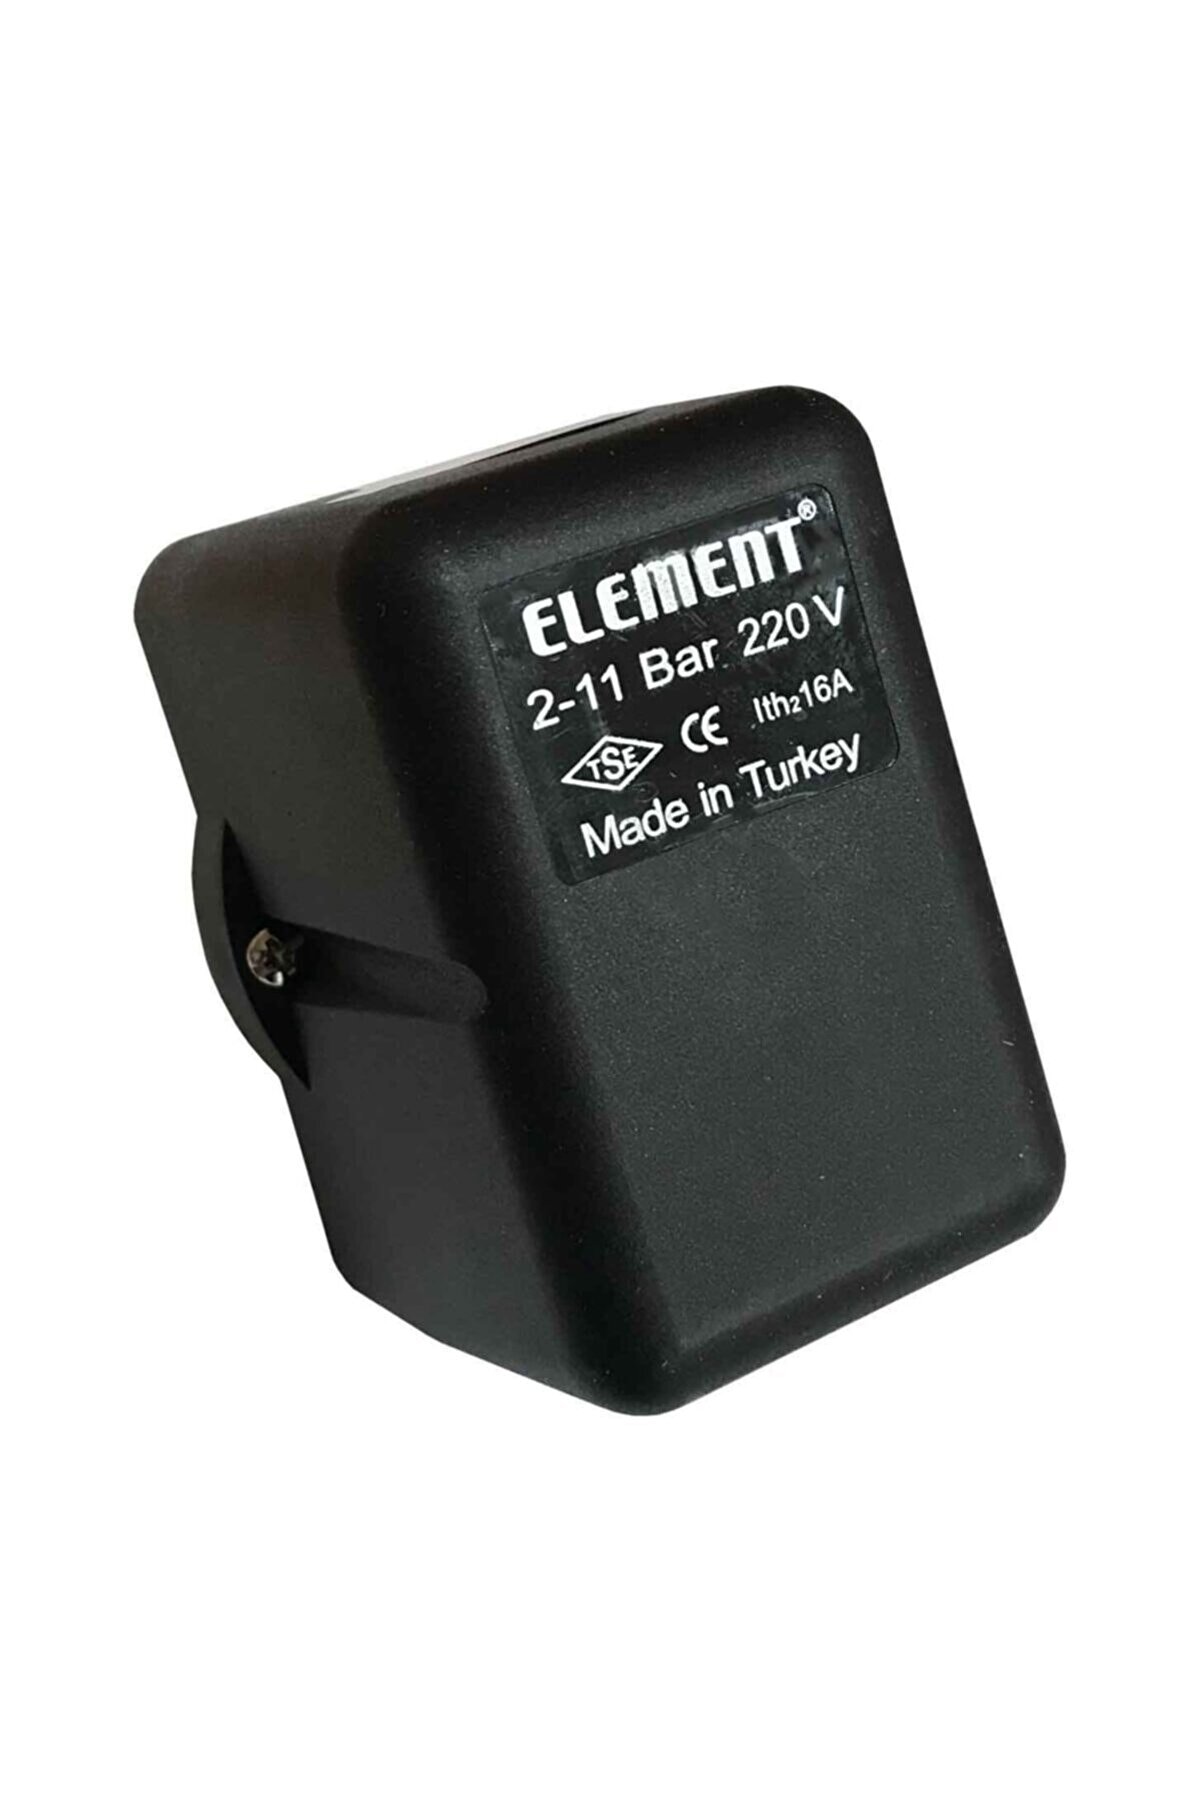 Element Basınç Şalteri (Hidrofor Otomatiği) 220 Volt 2-11 Bar-bağlantı 1/2"